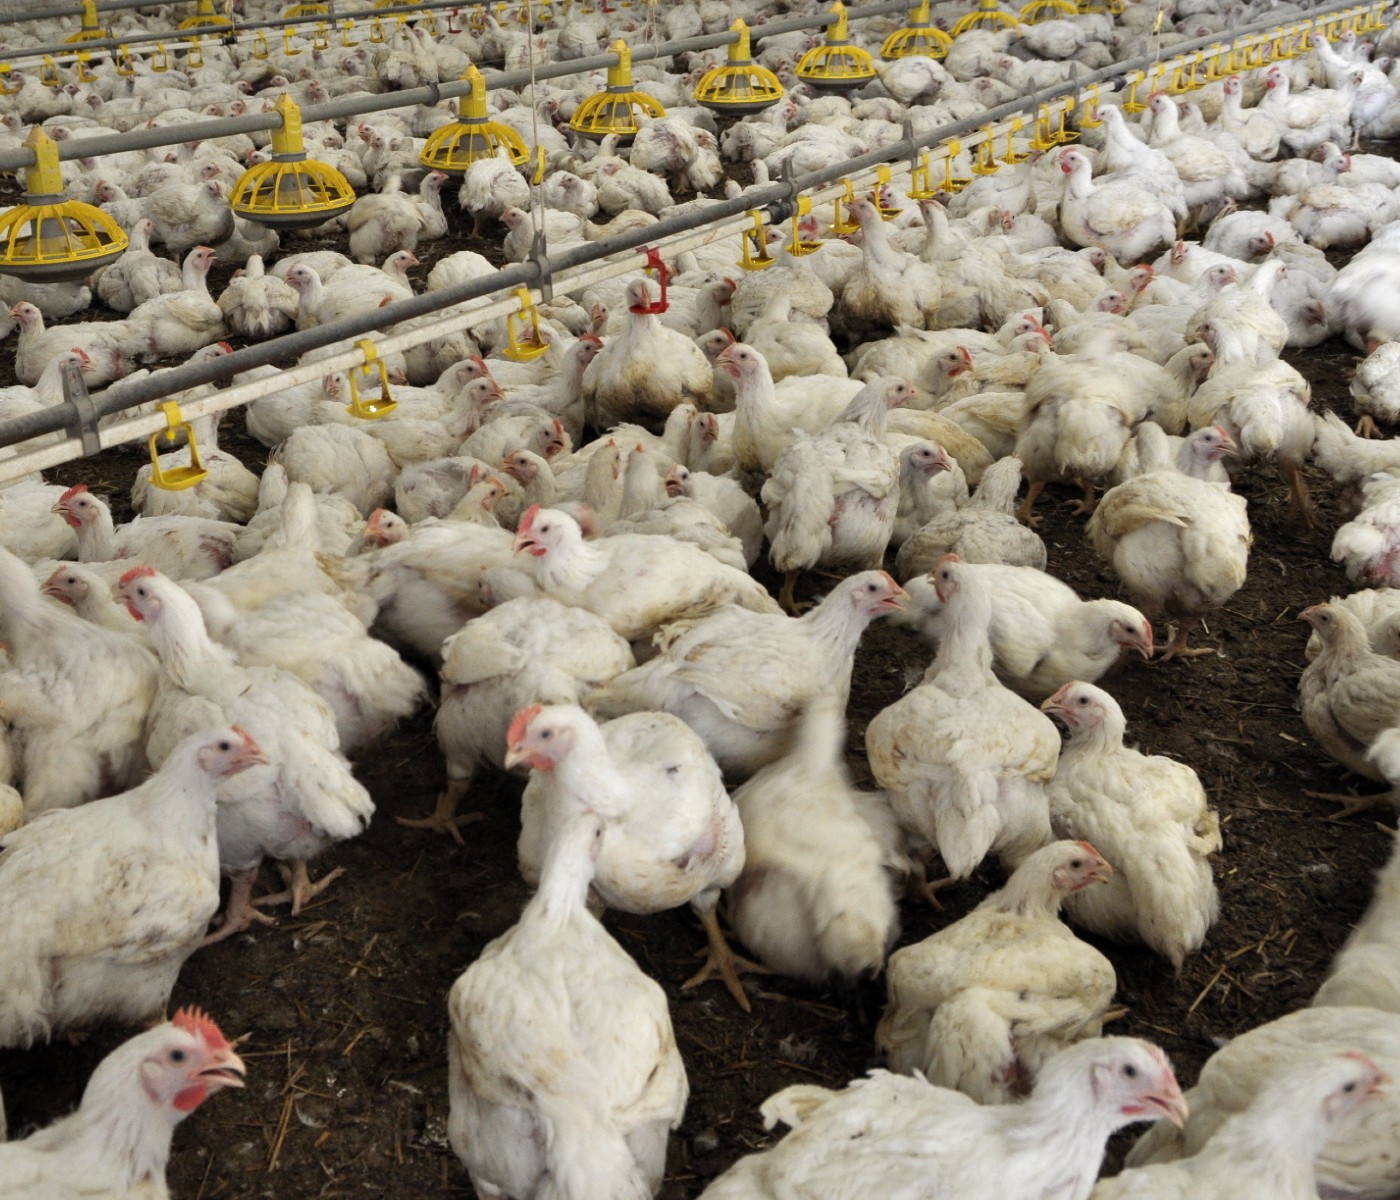 Sistema de sanidad aviar de Argentina: Positiva auditoría de la Unión Europea